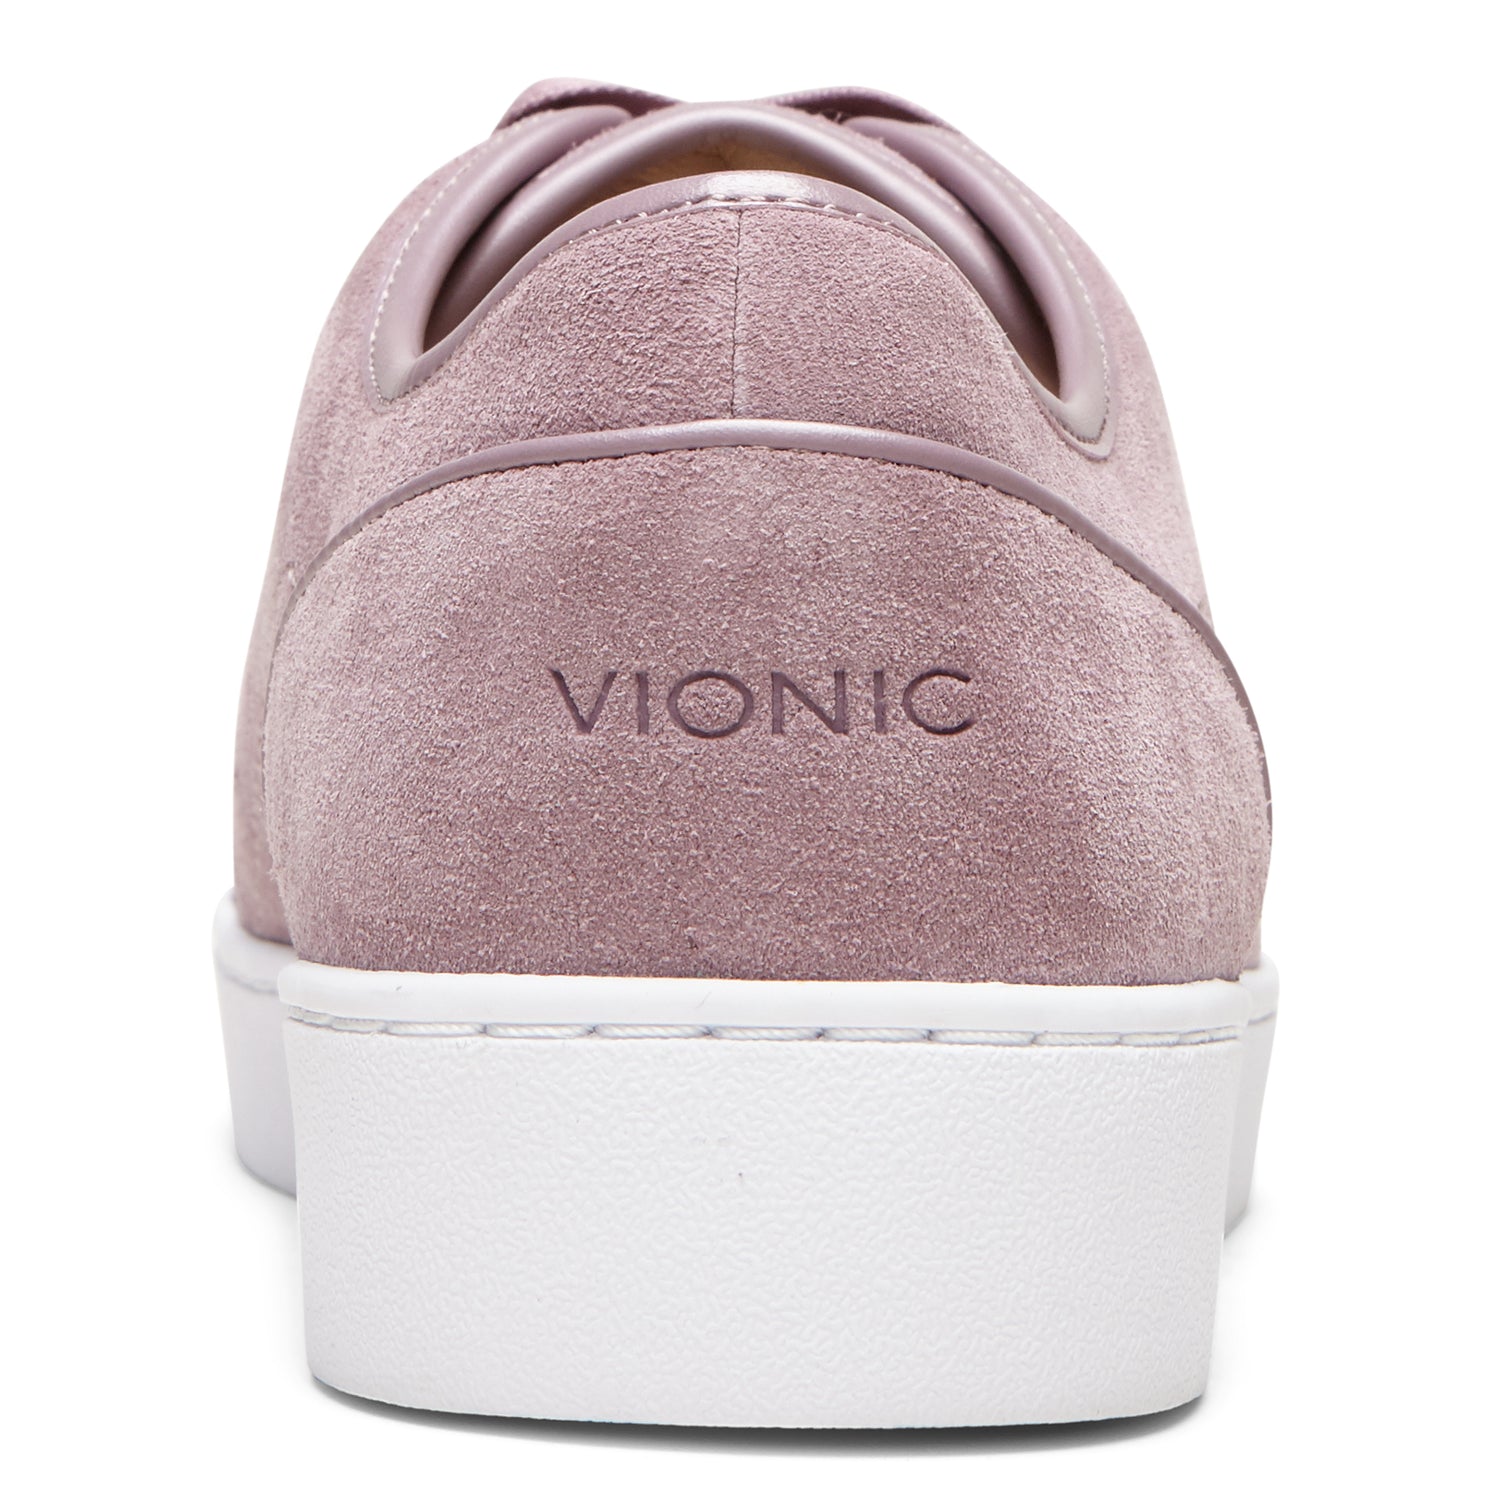 Vionic Purple Womens Fashion Sz 5